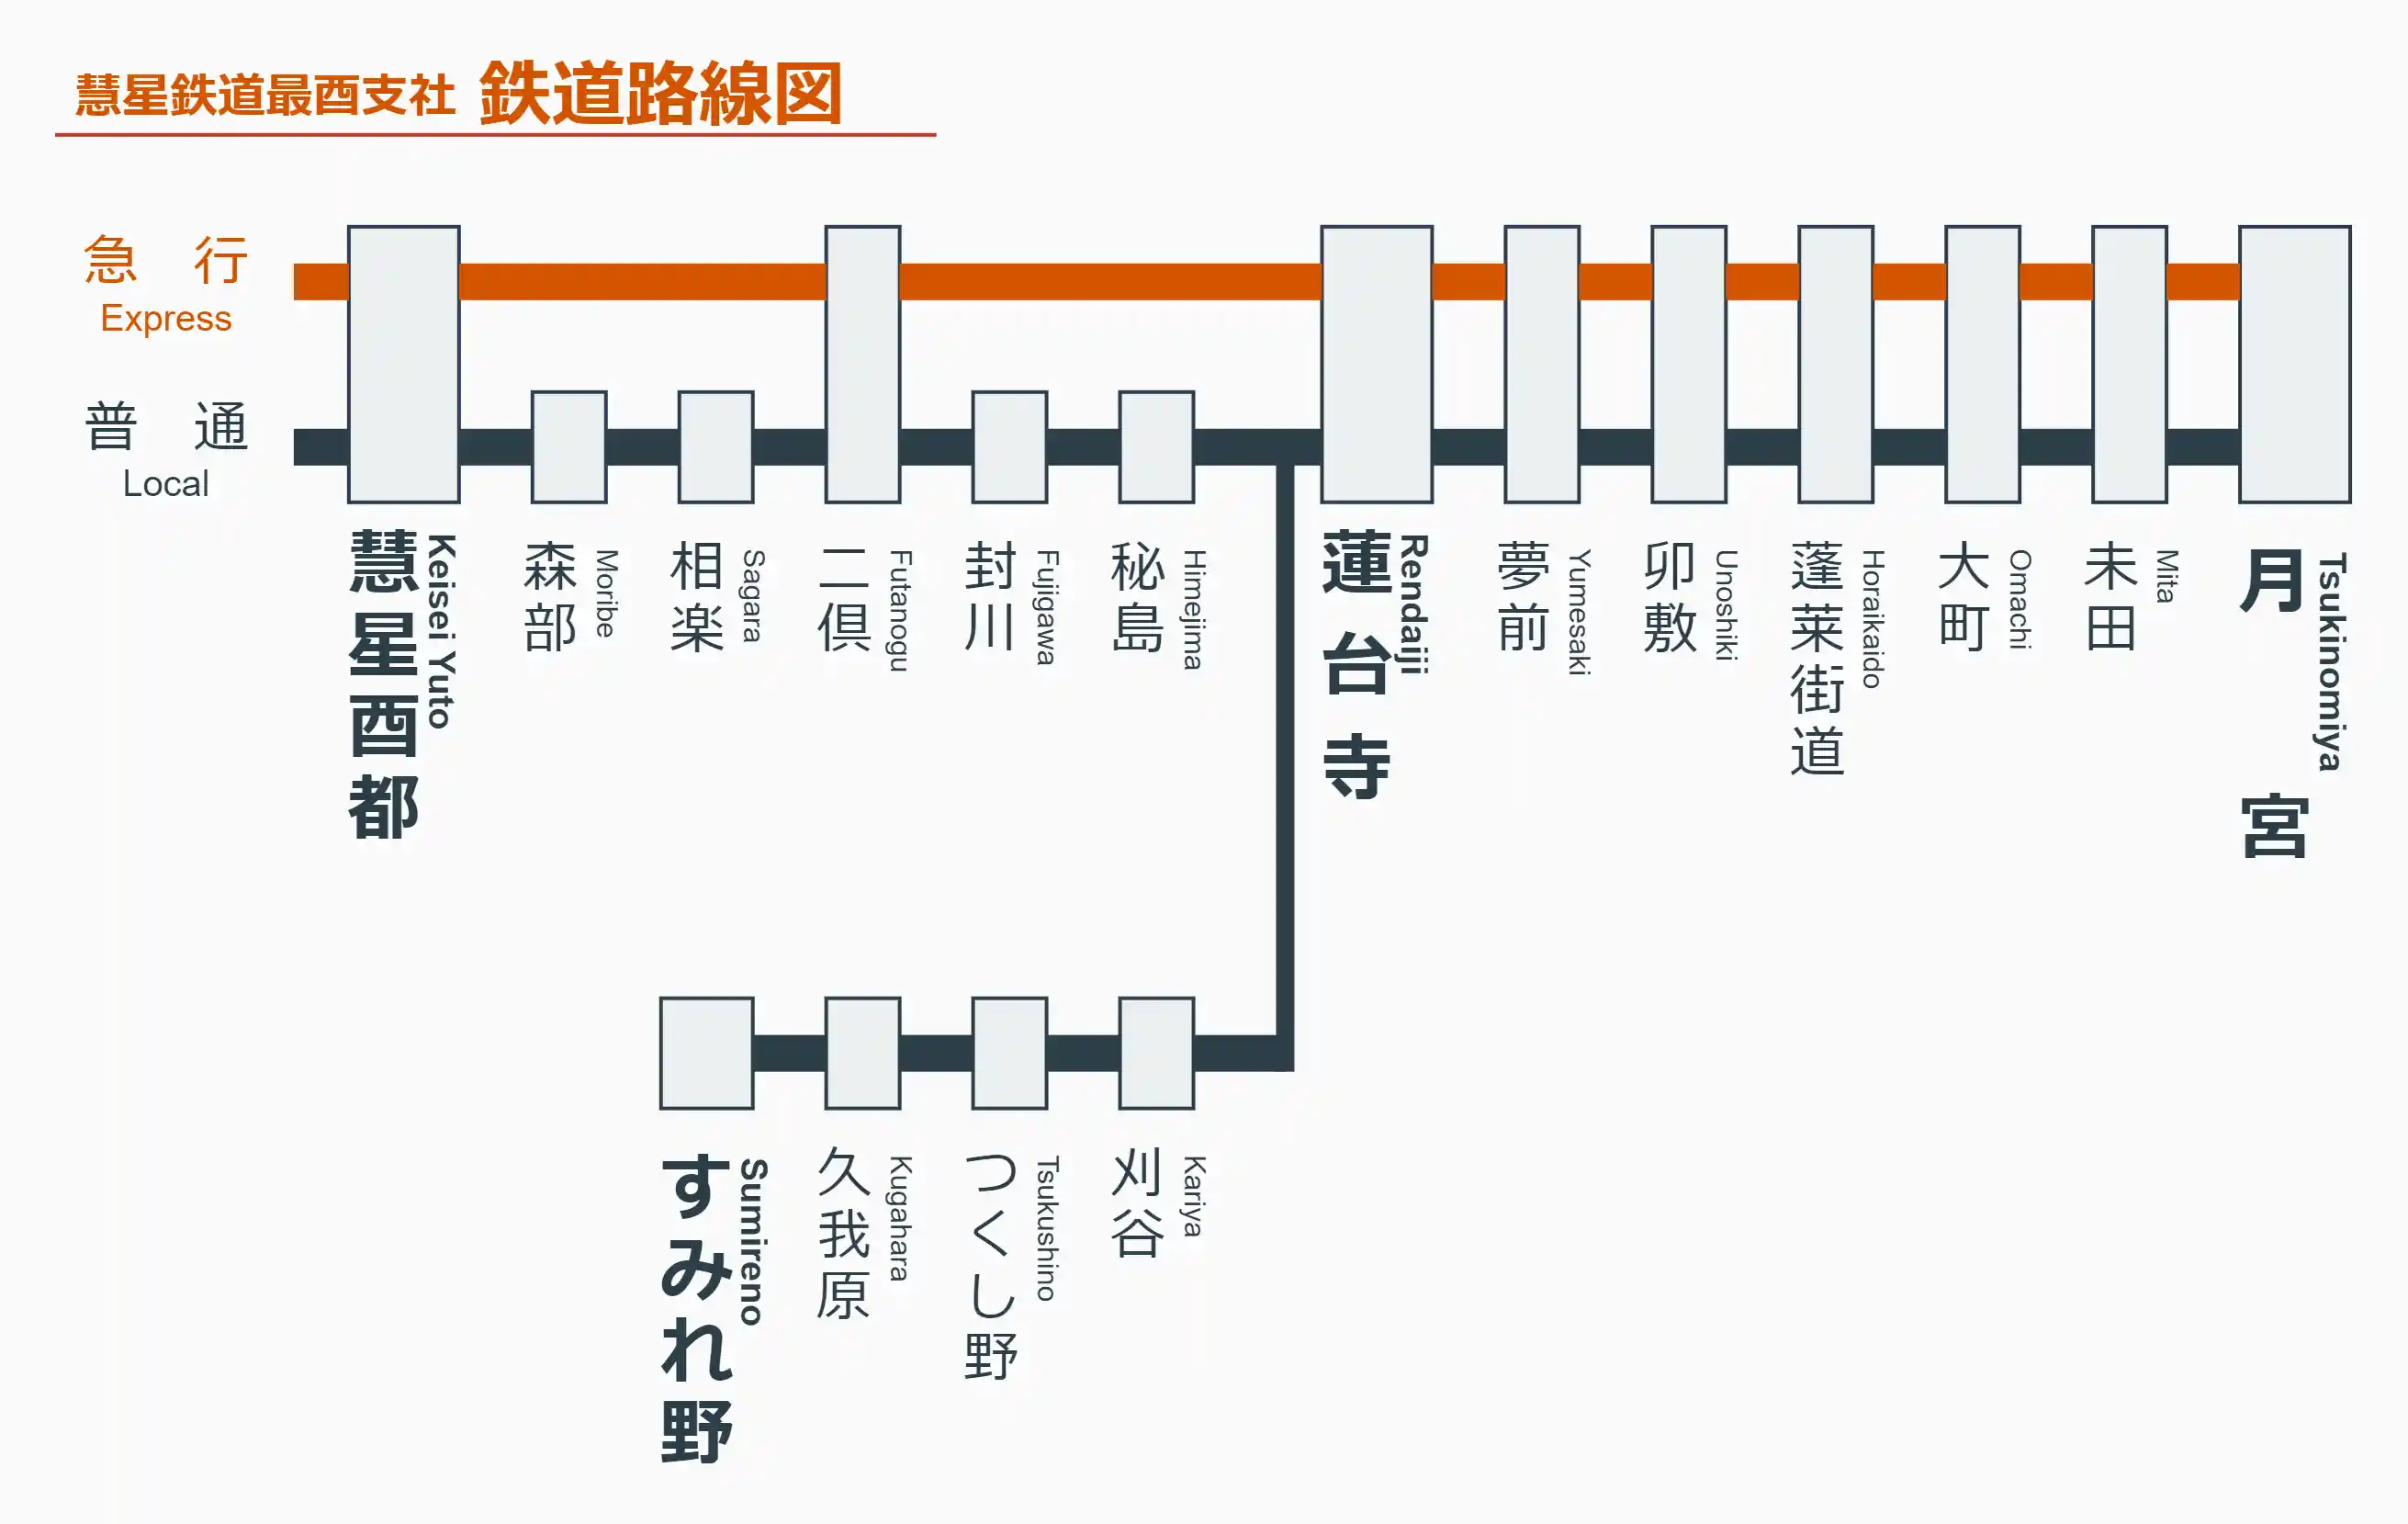 慧星鉄道最酉支社路線図（第八話時点）_0.png